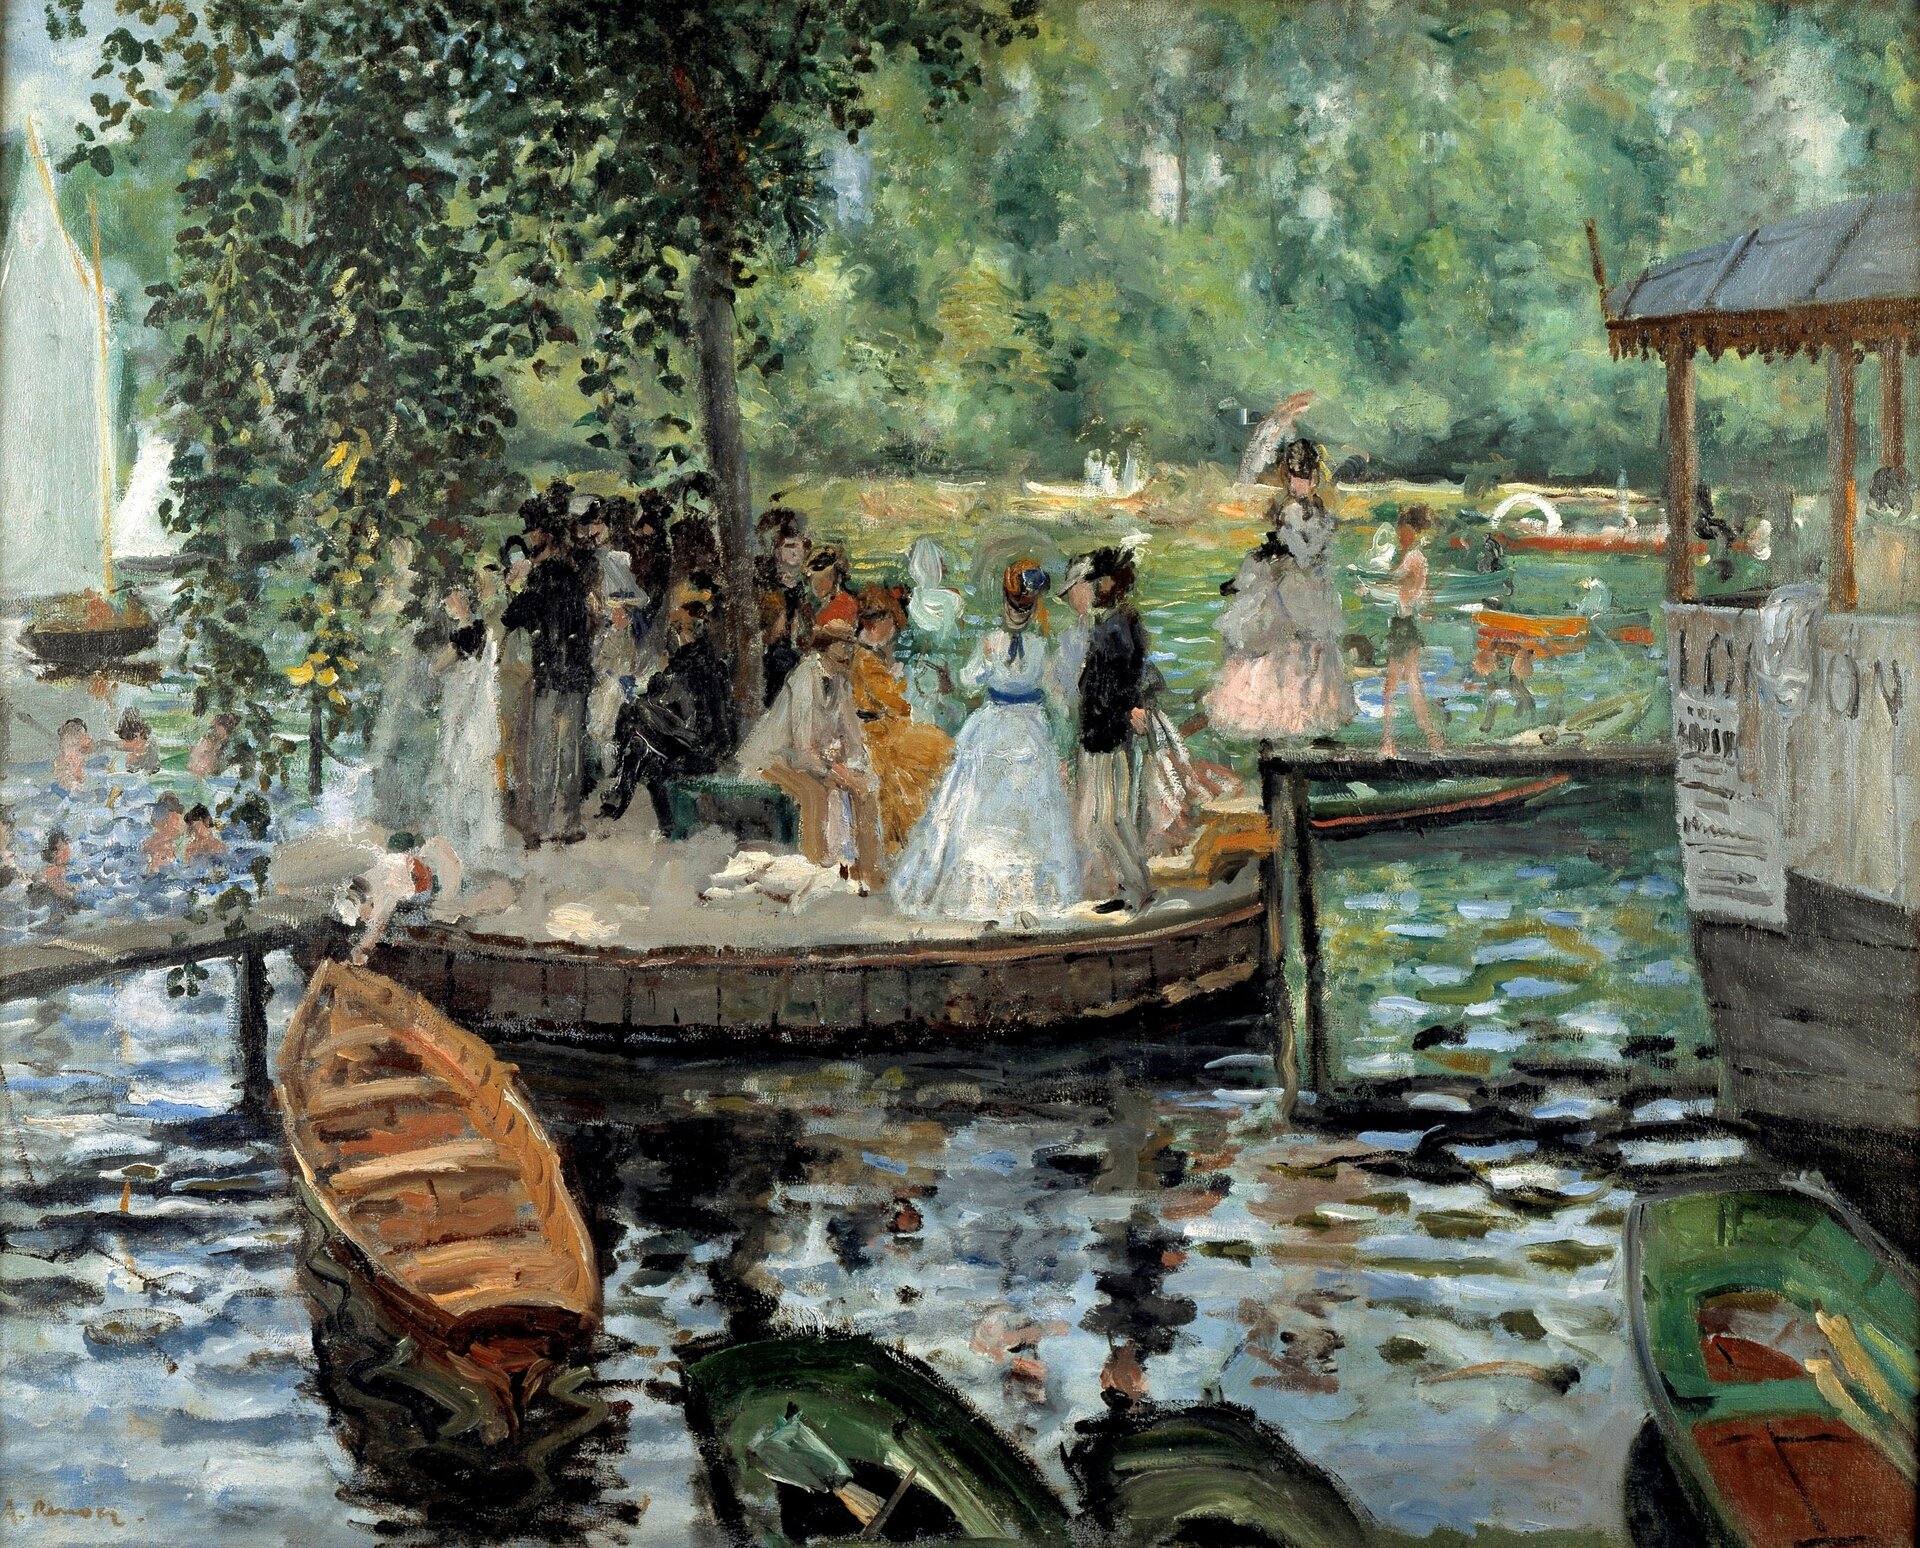 Ilustracja o kształcie poziomego prostokąta przedstawia obraz Auguste Renoira „La Grenouillère”. Ukazuje elegancko ubranych ludzi, spędzających czas w pięknych okolicznościach przyrody. Postacie znajdują się na pomoście. W tle na widać płynące po rzece łodzie.